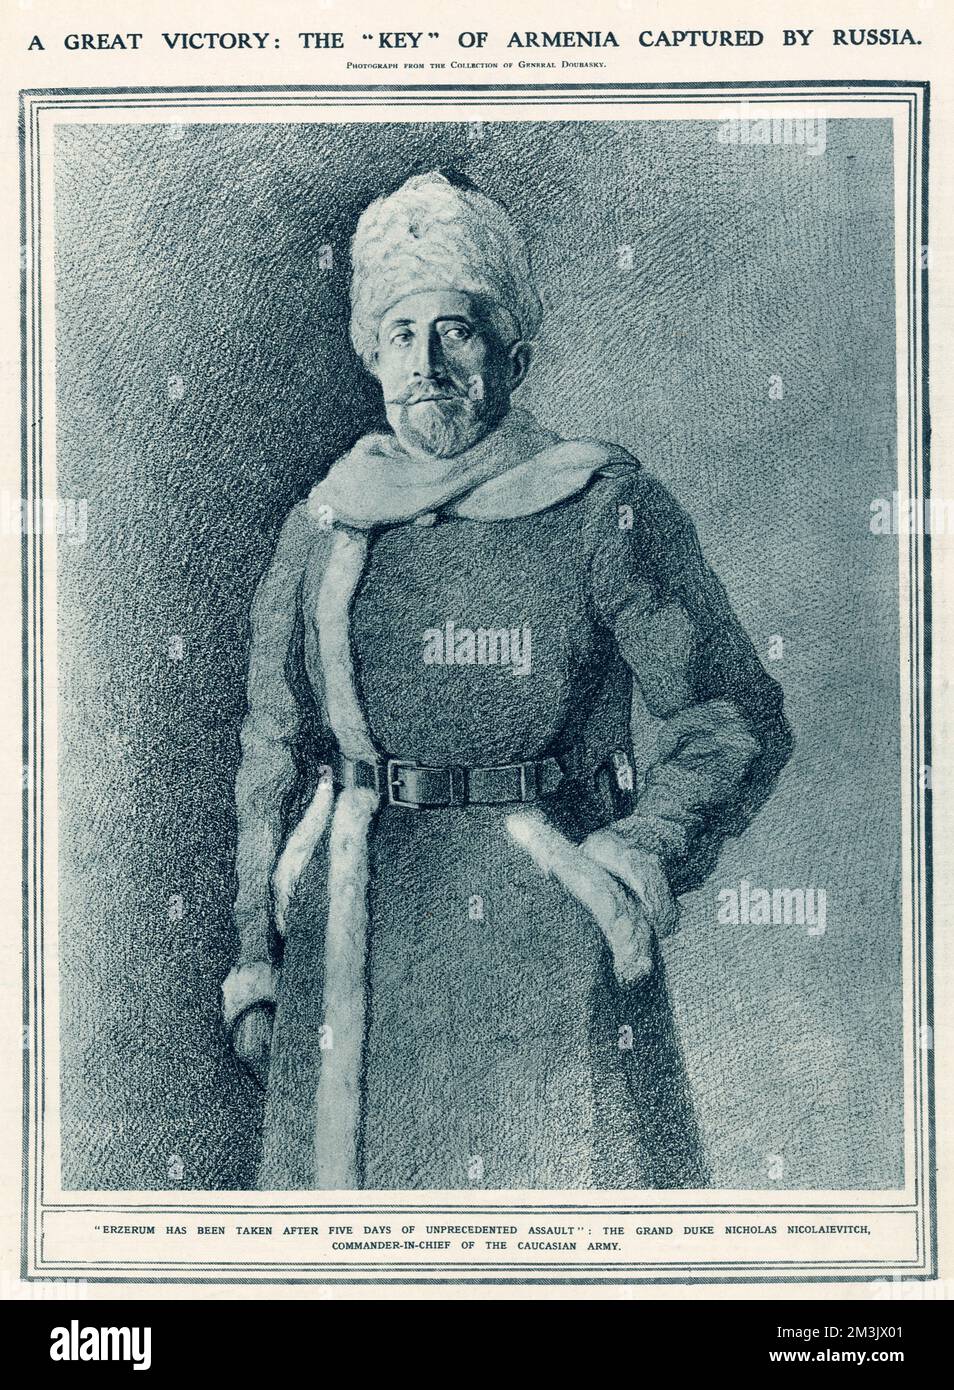 El oficial ruso cuyo ejército capturó las fortificaciones turcas de Erzerum, en Armenia. Ilustración tomada de una fotografía de la colección del General Doubasky. Foto de stock